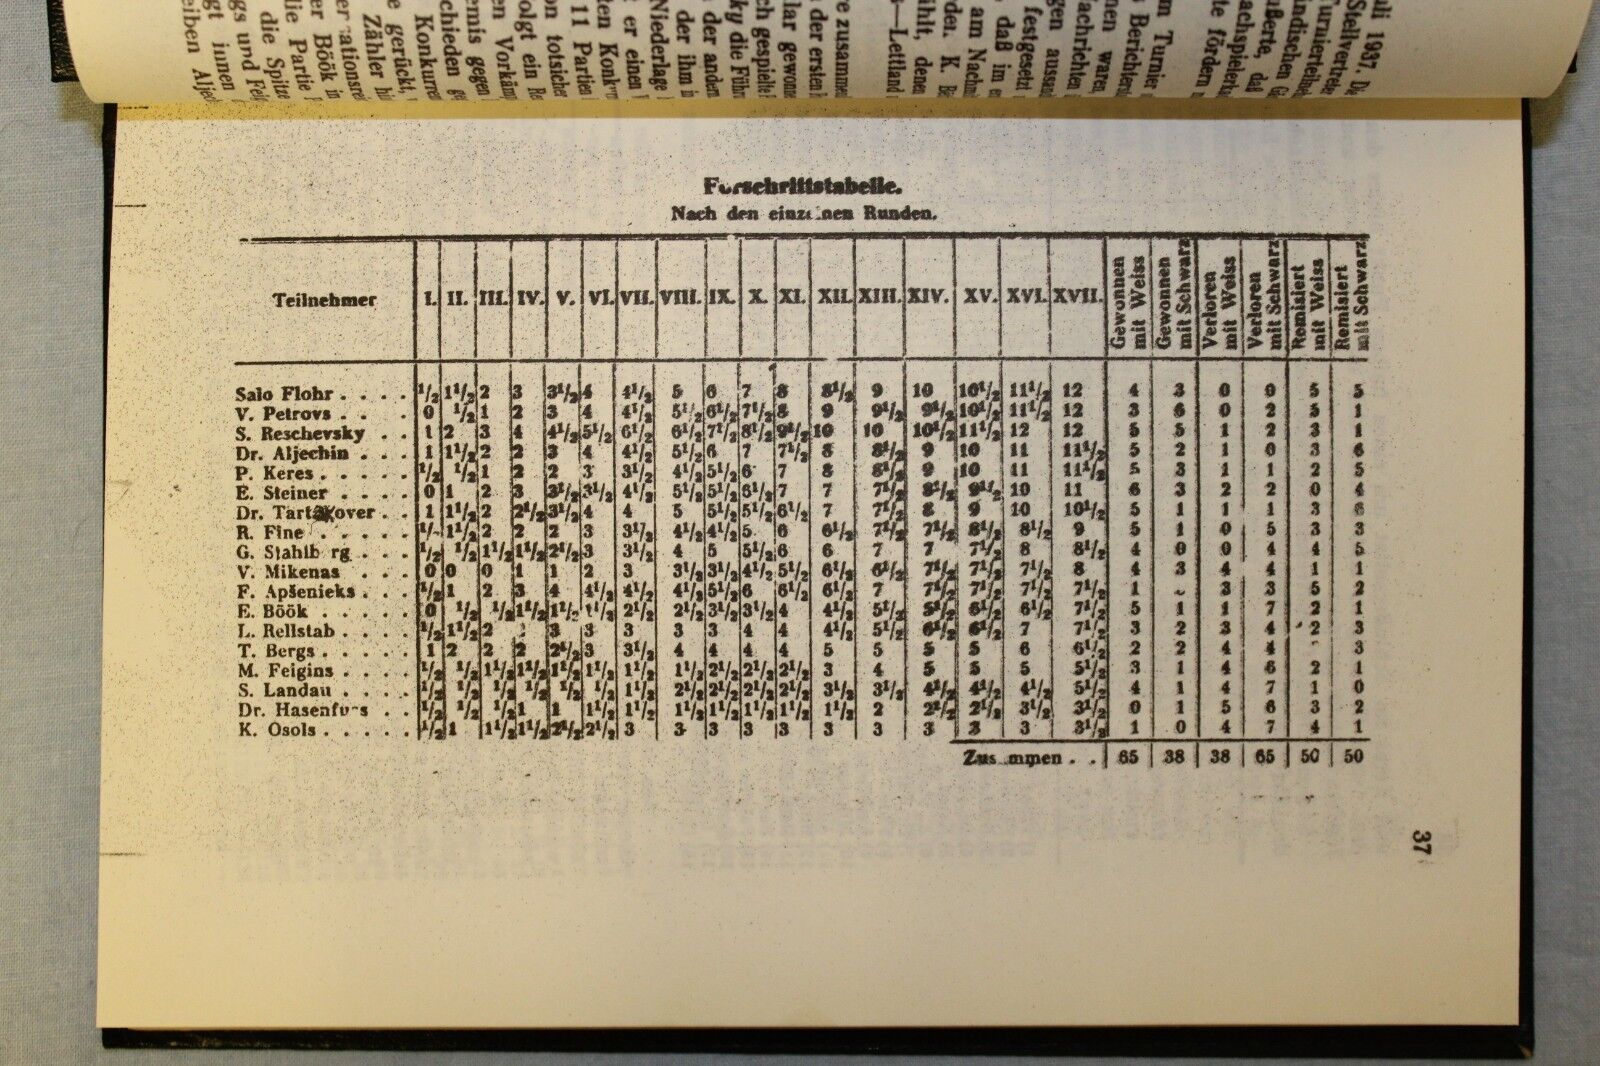 11314.German Chess Book: Schachmeisterturnier zu Kemeri in Lettland 1937